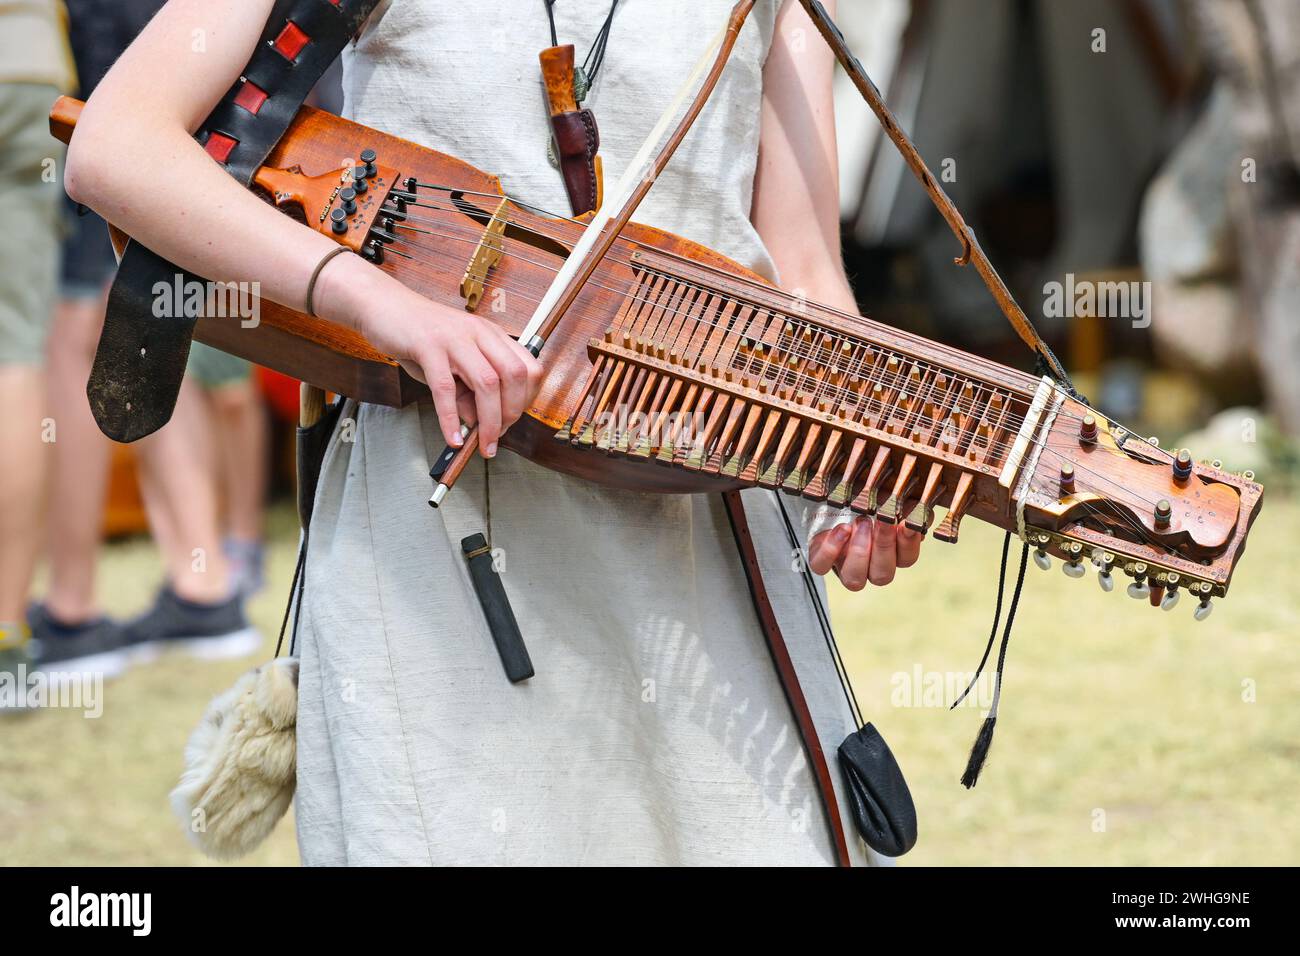 Nyckelharpa, violon à touches, instrument de musique suédois traditionnel, instrument à cordes ou chordophone joué par une jeune femme Banque D'Images